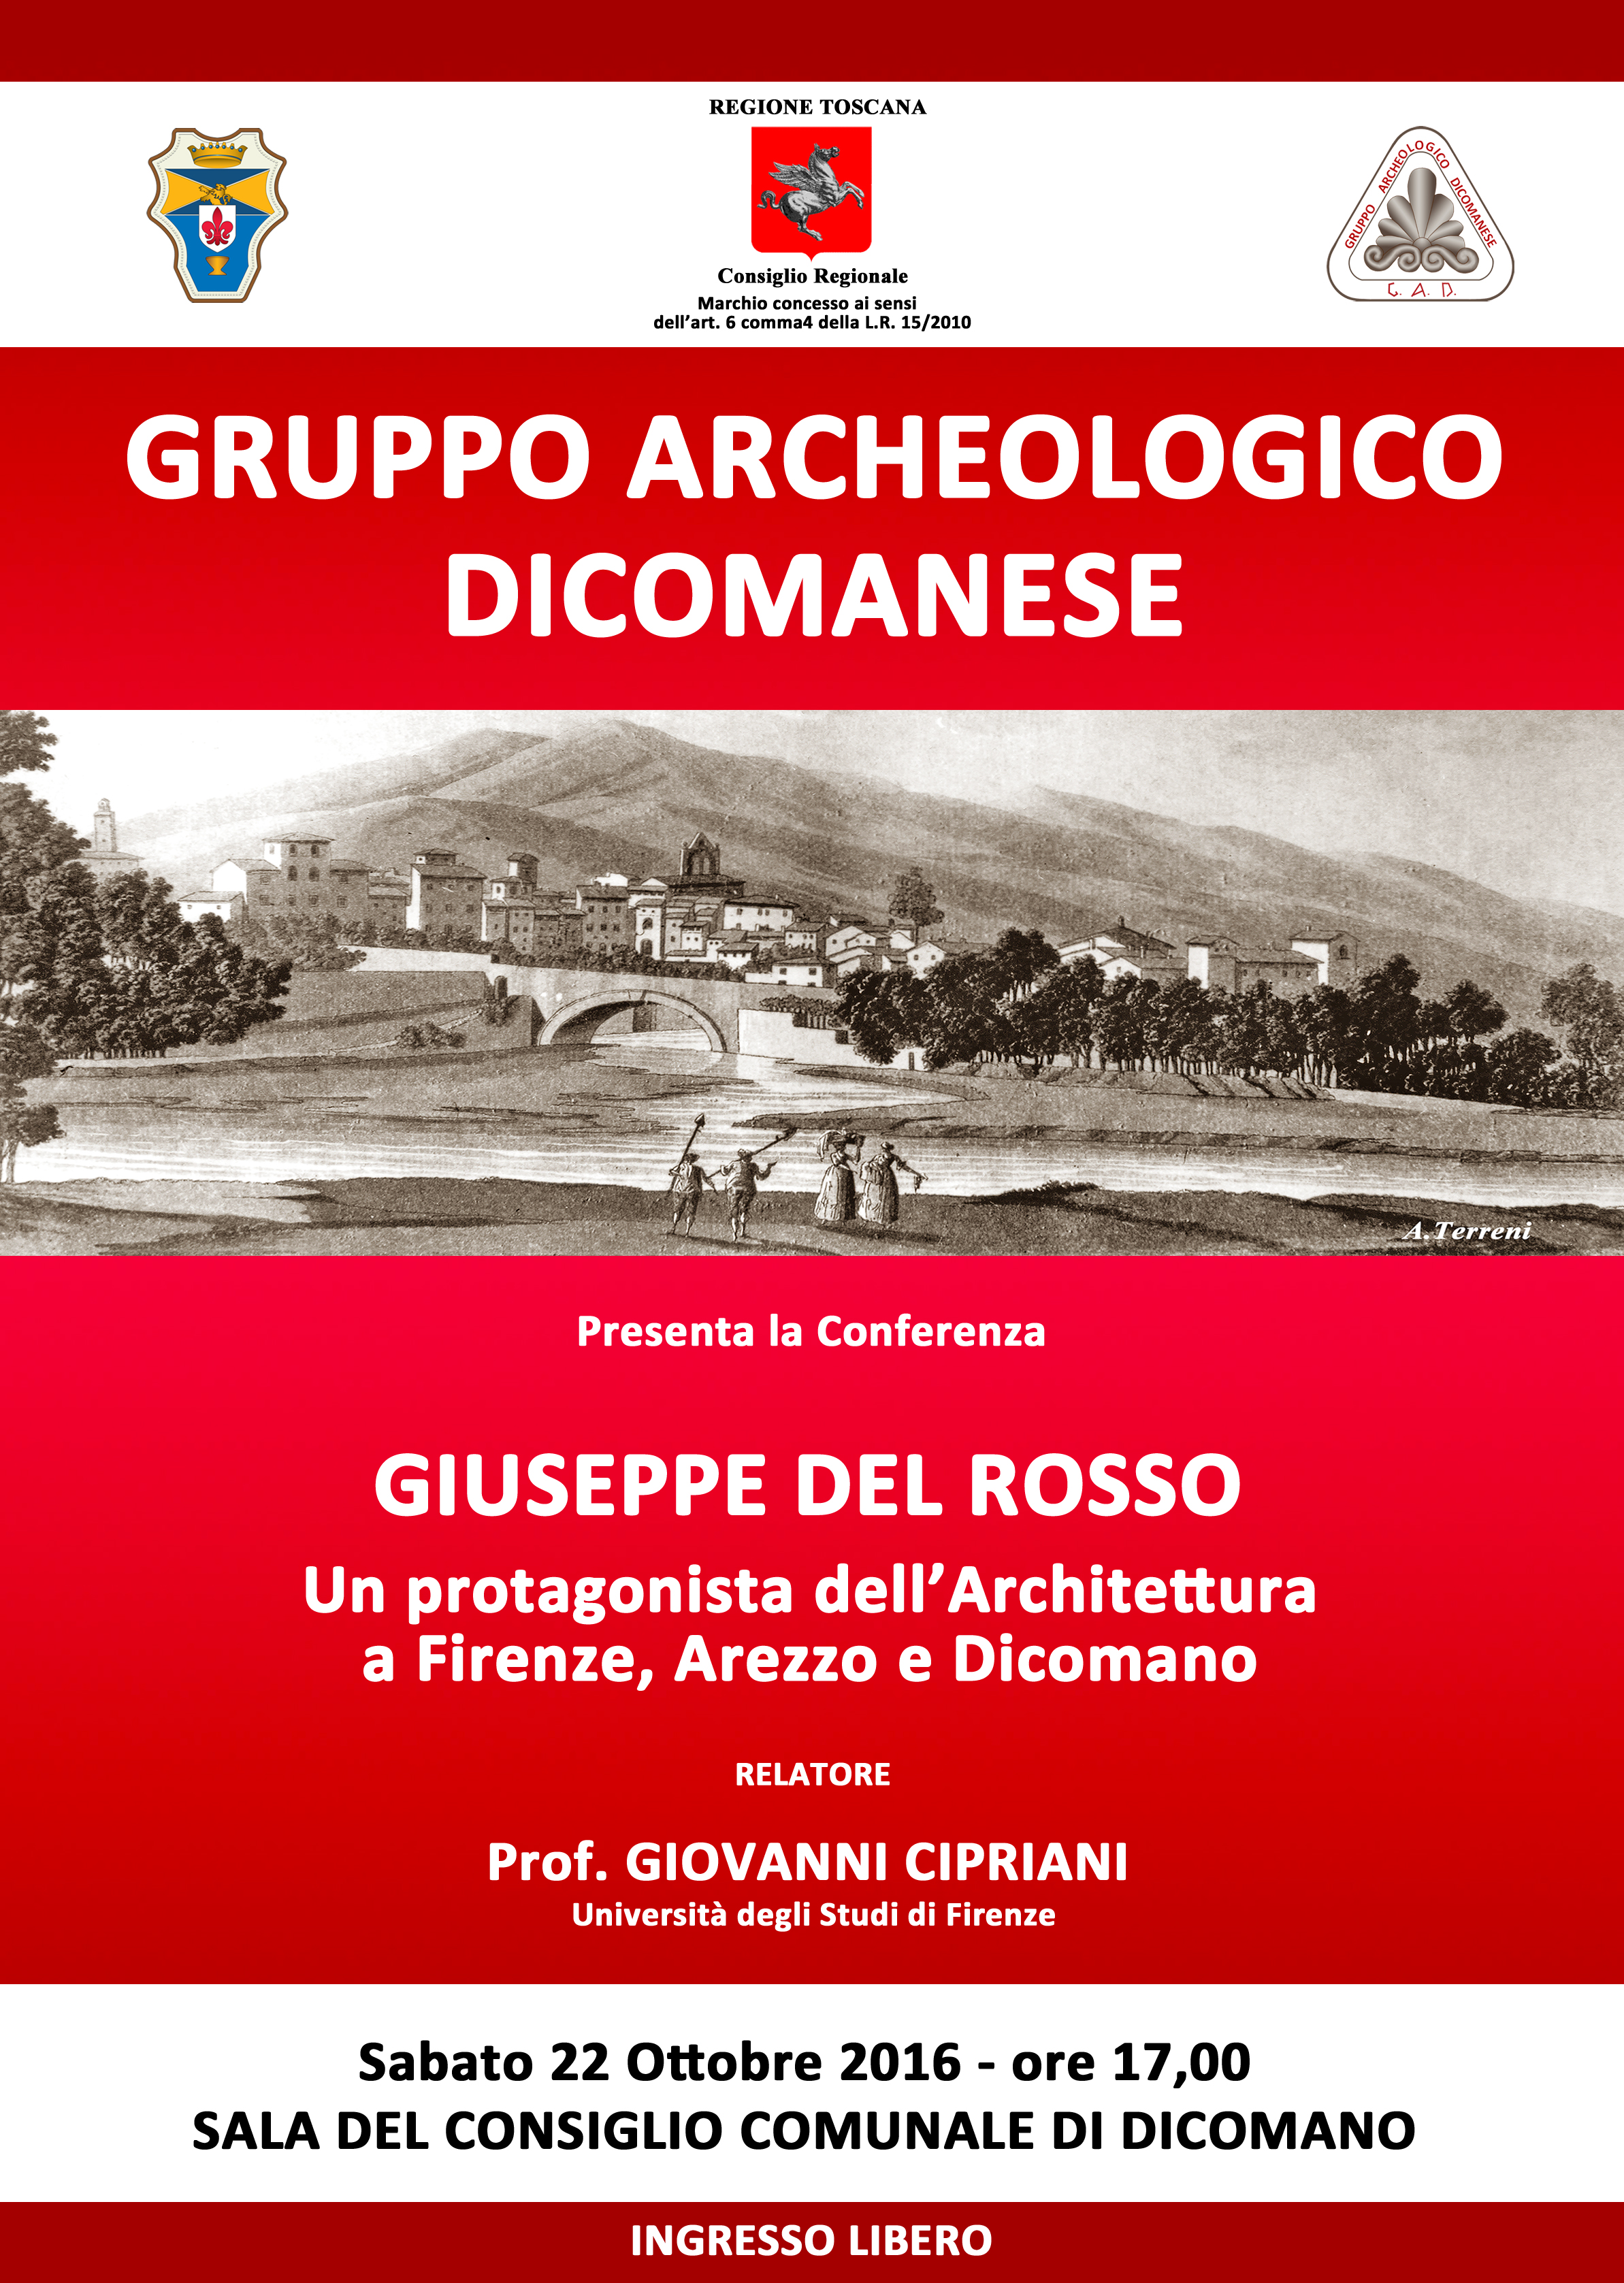 Giuseppe Del Rosso: una conferenza del prof. Giovanni Cipriani 